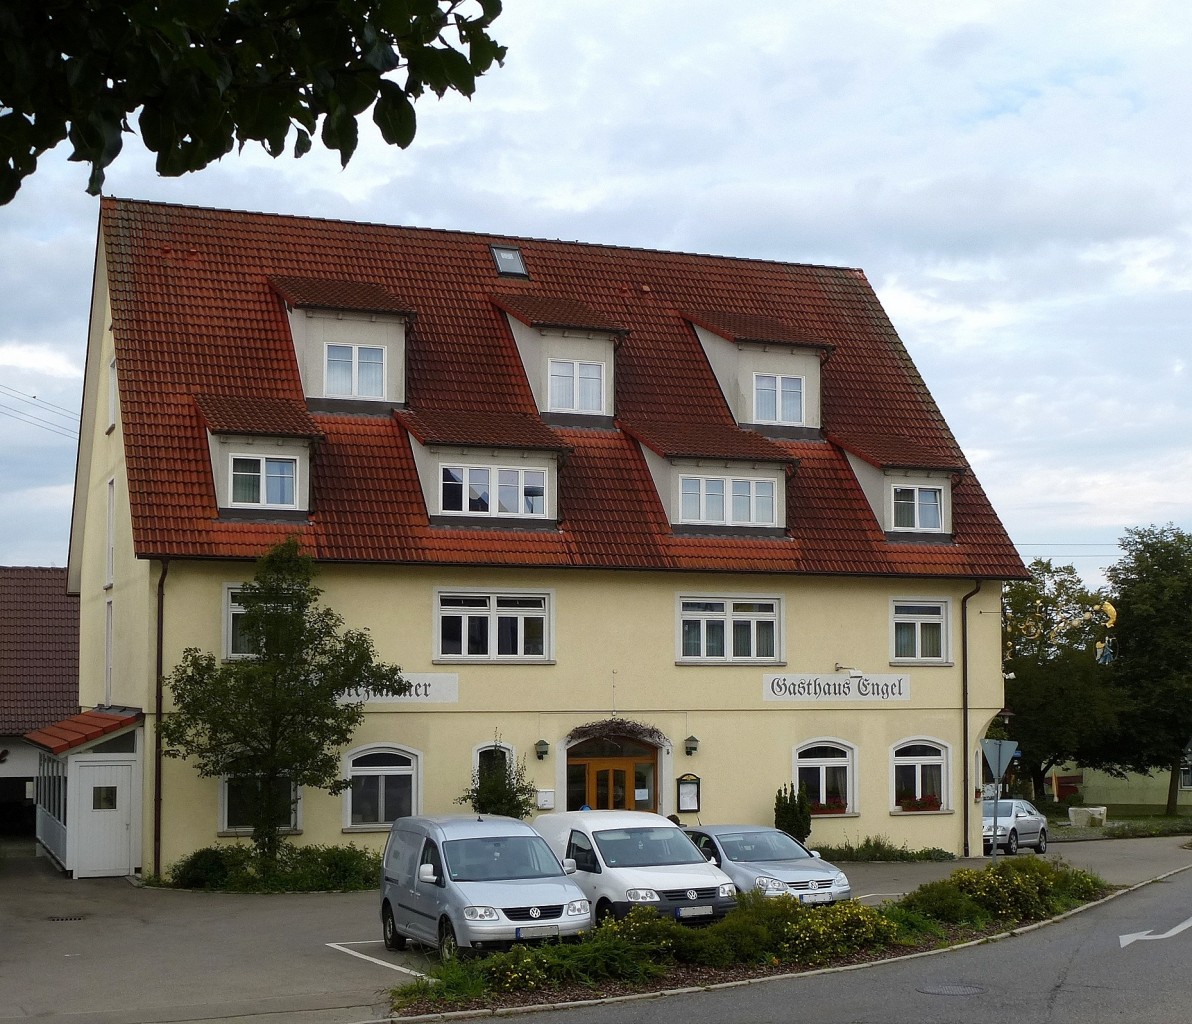 Herbertingen, Hotel-Restaurant  Engel , Aug.2014